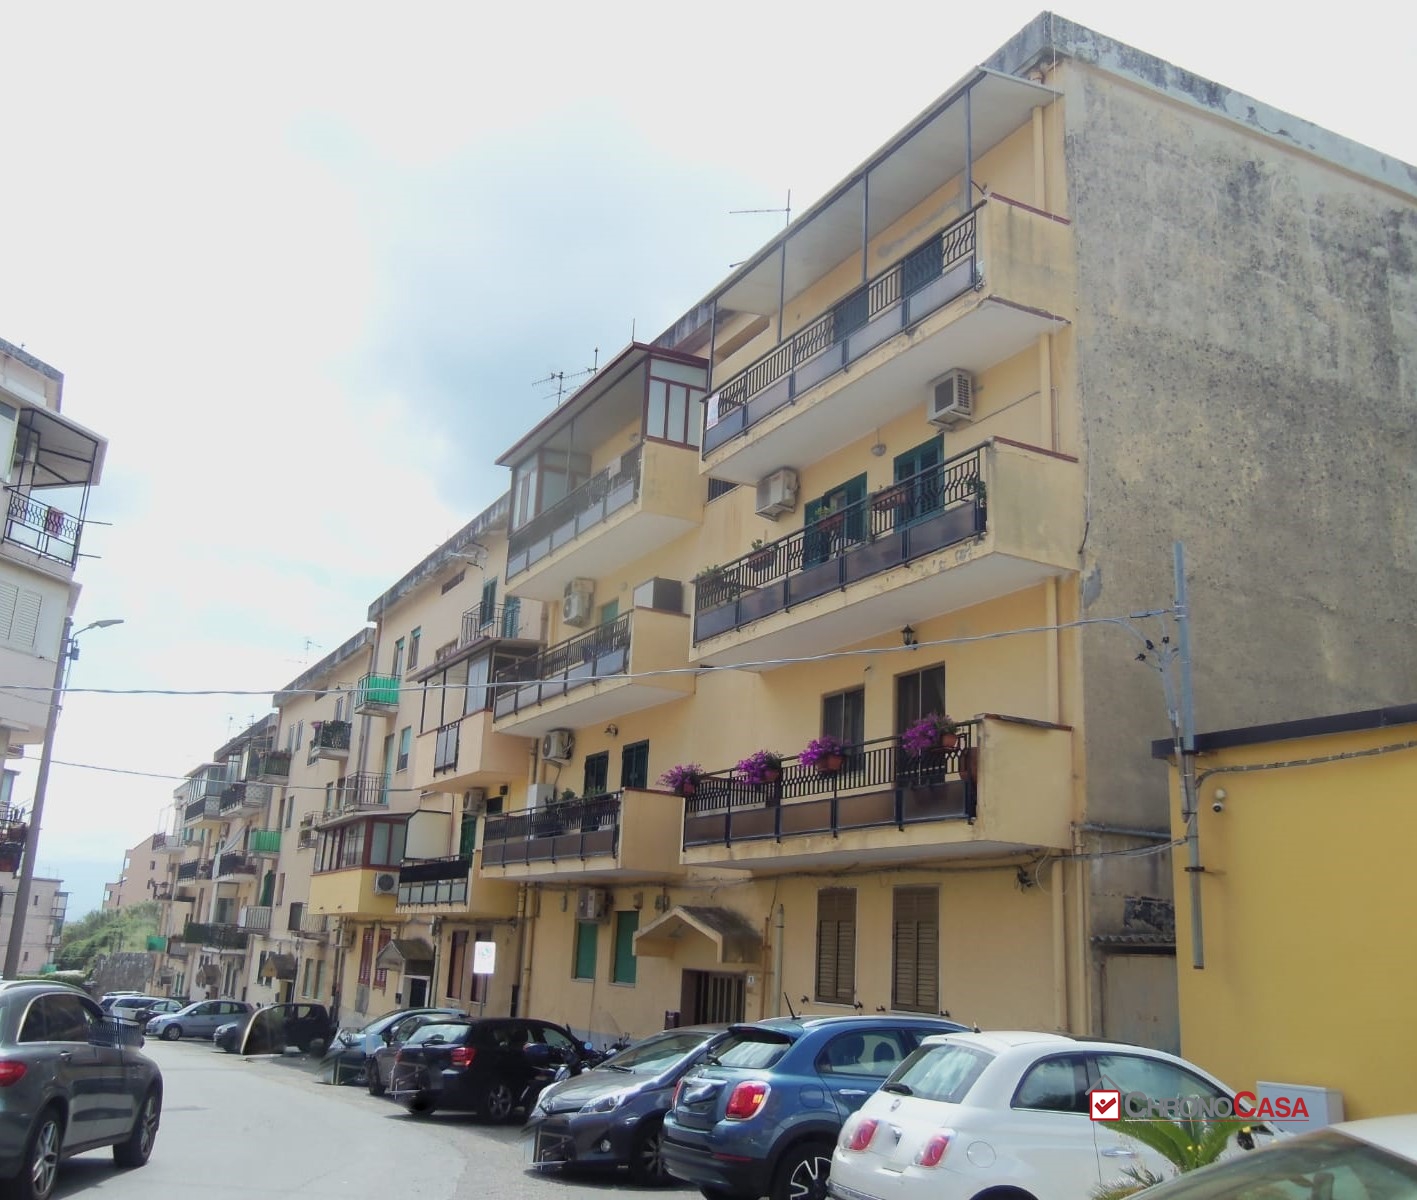 Appartamento in vendita a Messina, 3 locali, prezzo € 78.000 | PortaleAgenzieImmobiliari.it